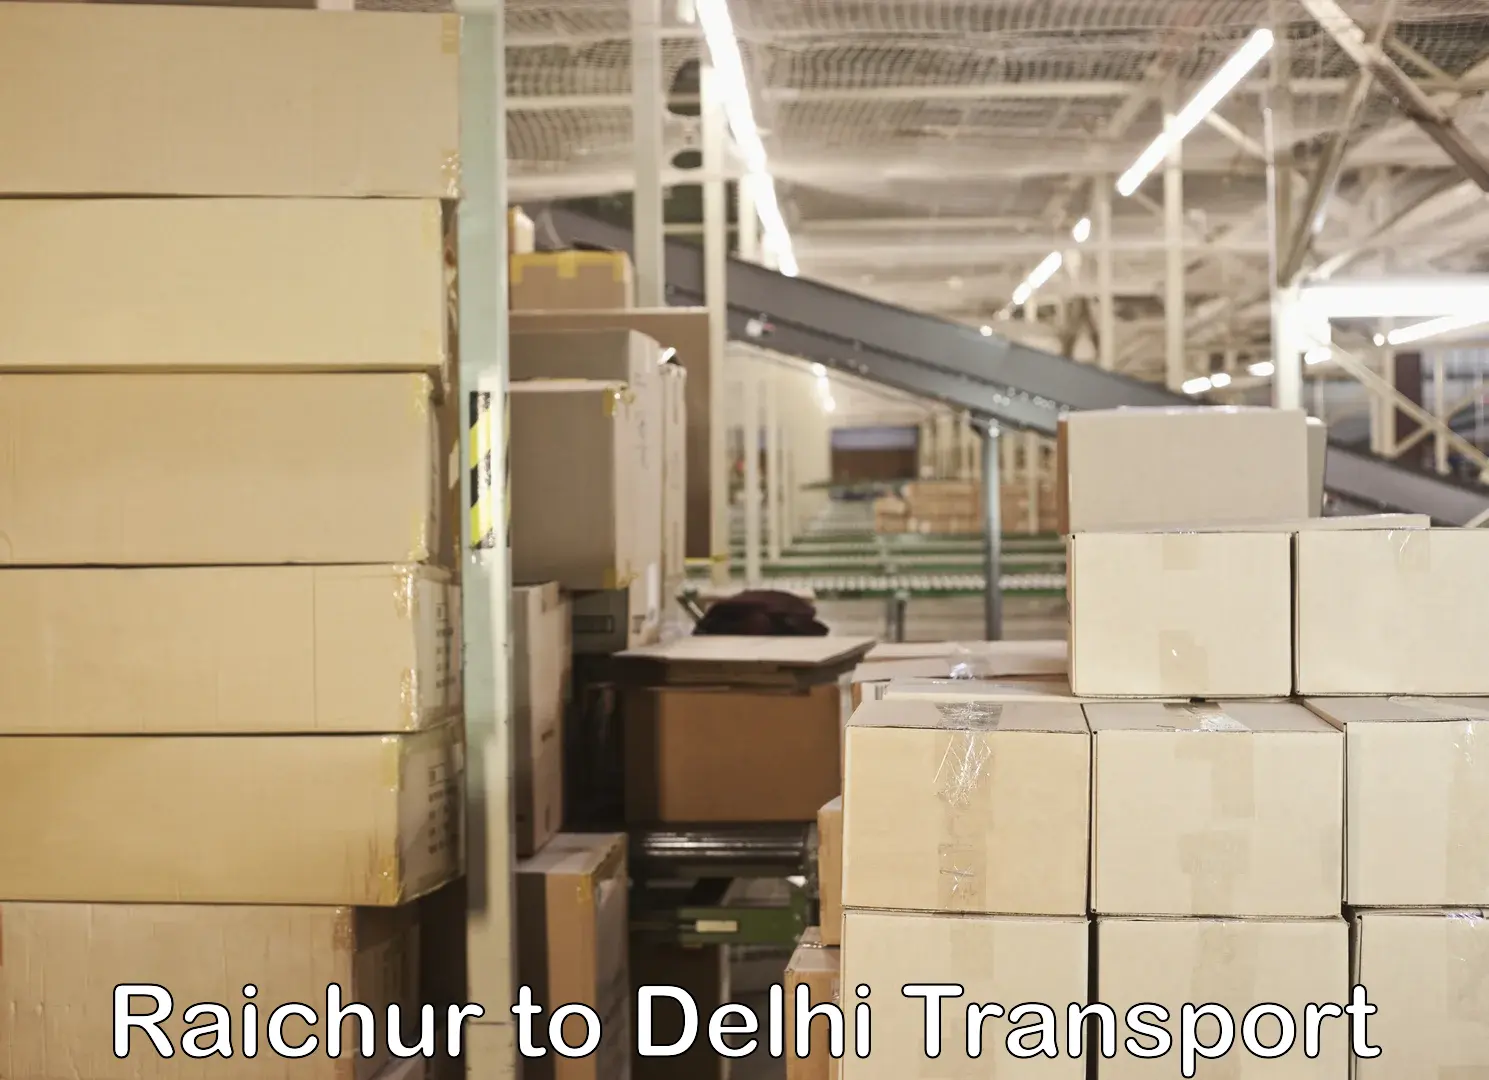 Commercial transport service Raichur to IIT Delhi